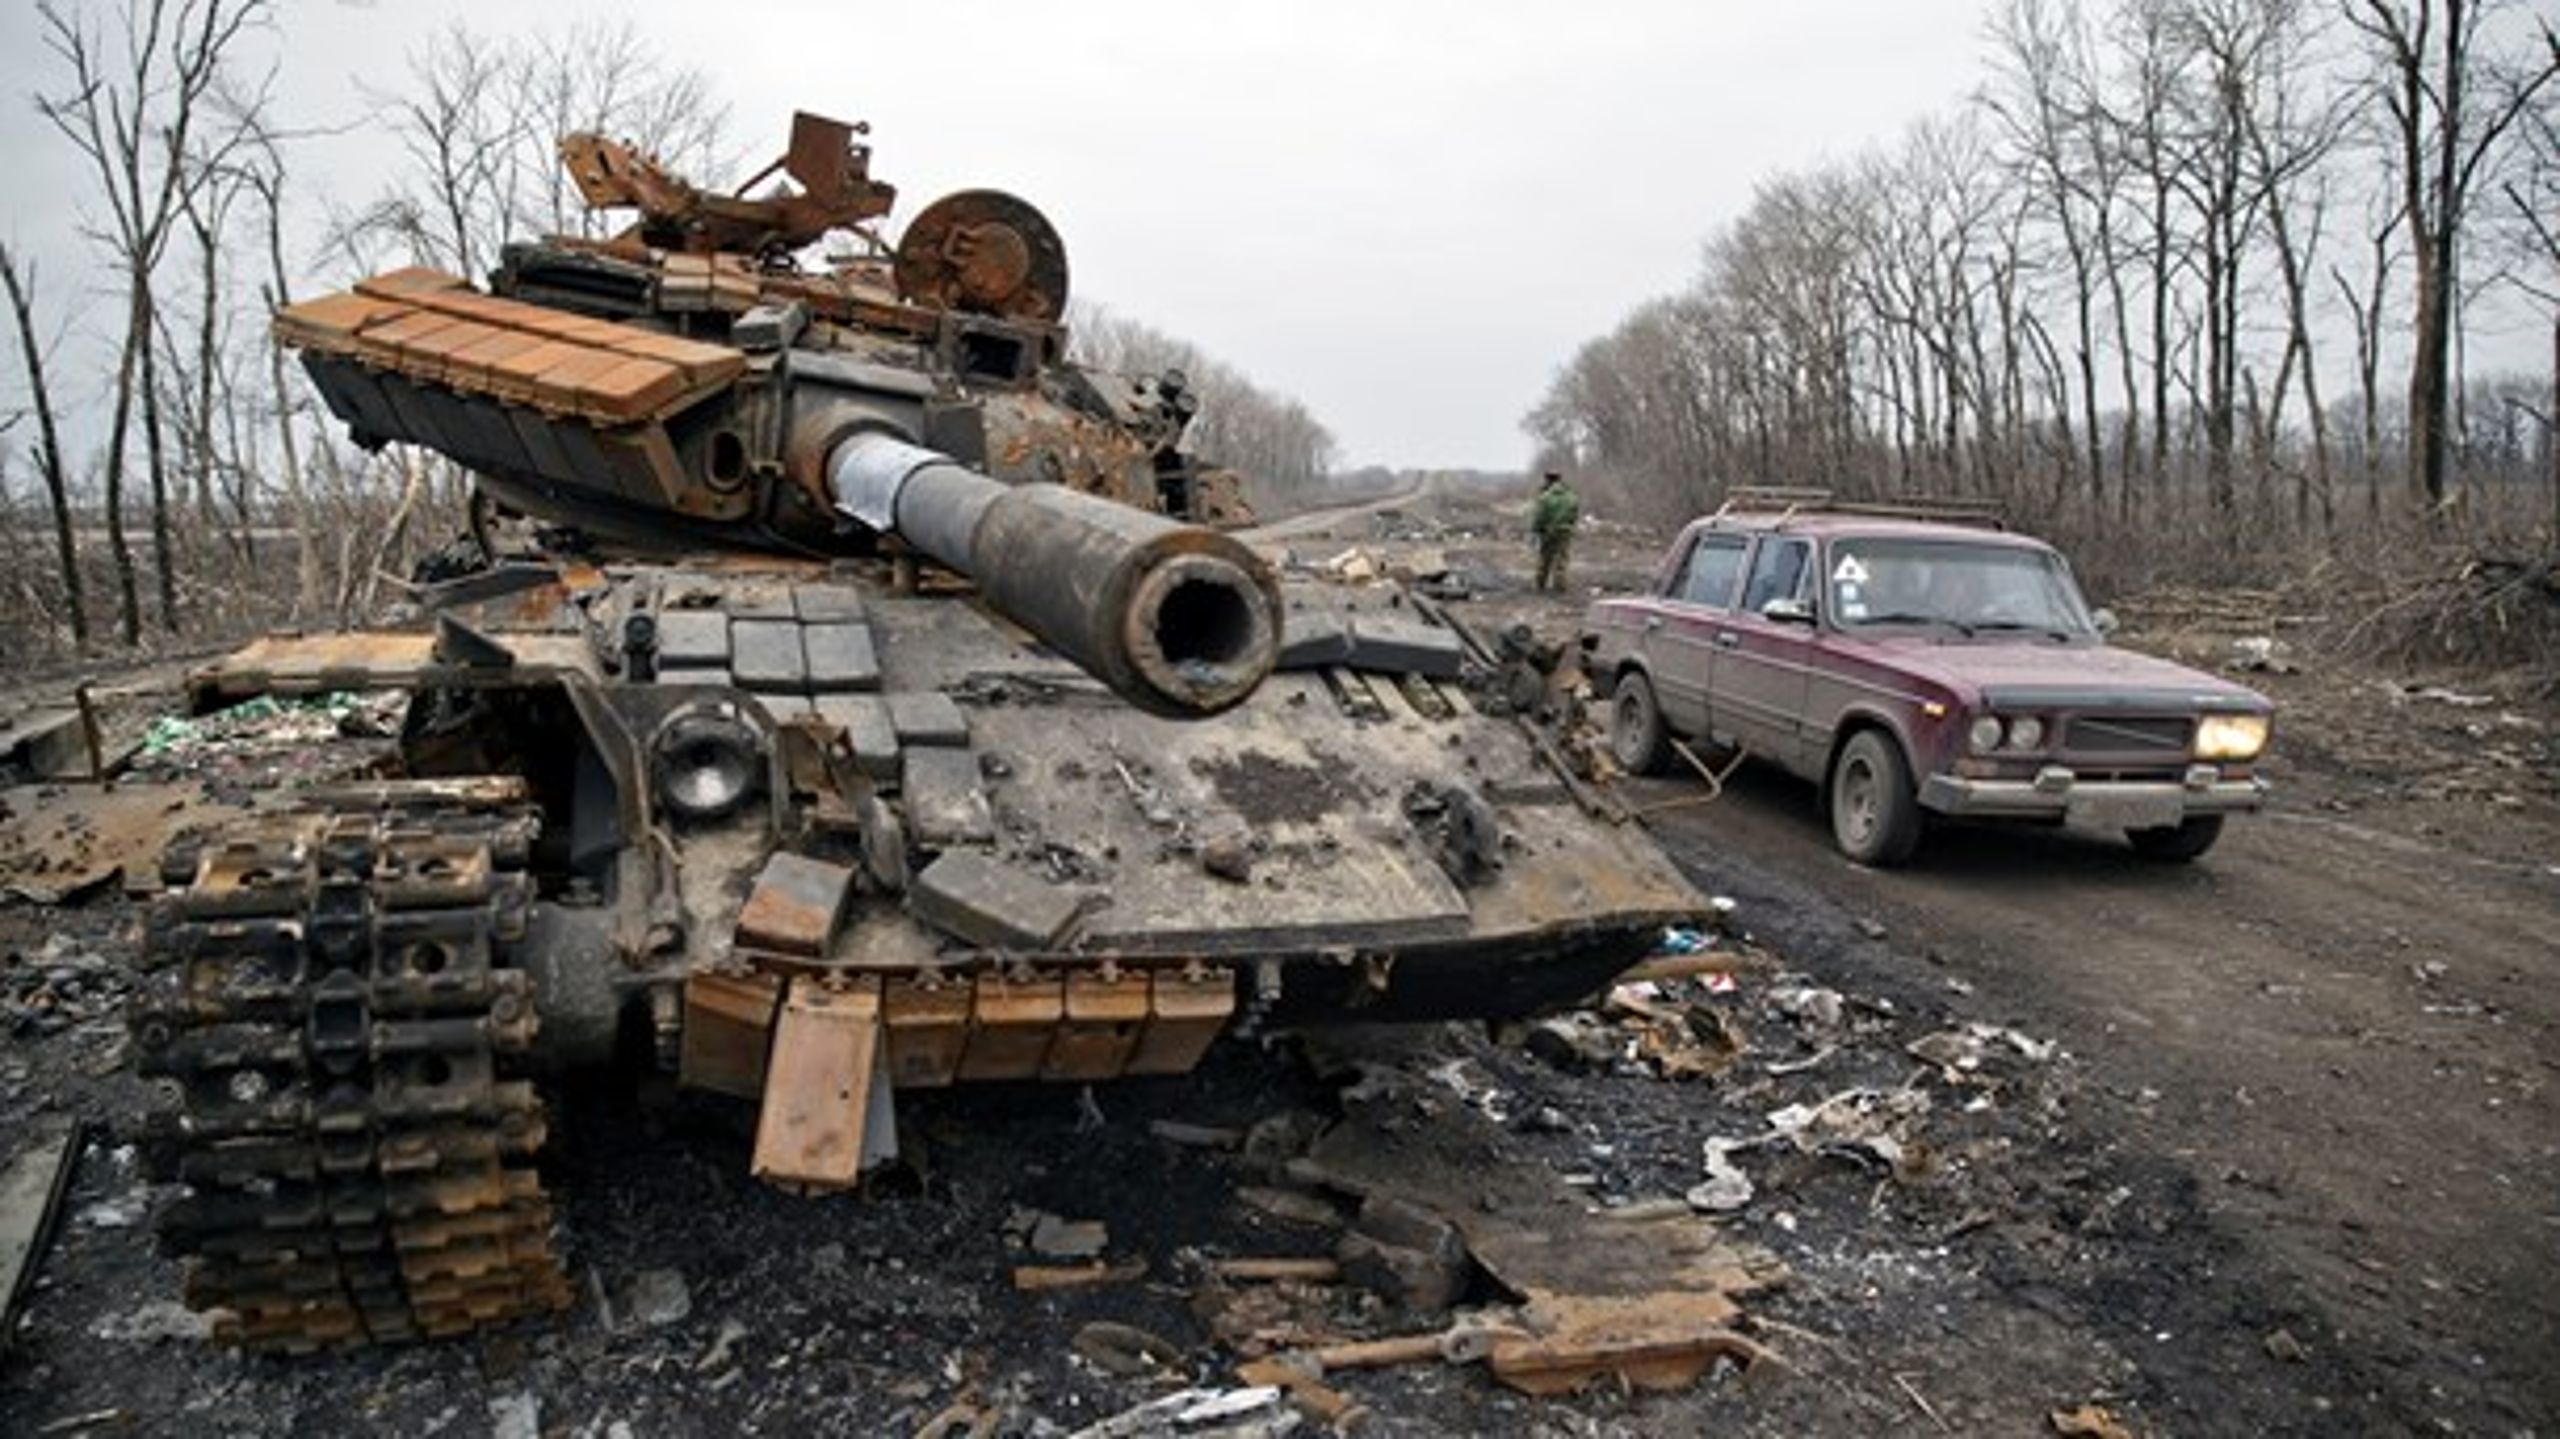 En ødelagt tank i Ukraine. Konflikten i landet har kostet 10.000 mennesker livet siden 2014, og den stopper ikke forløbig, siger ny analyse.